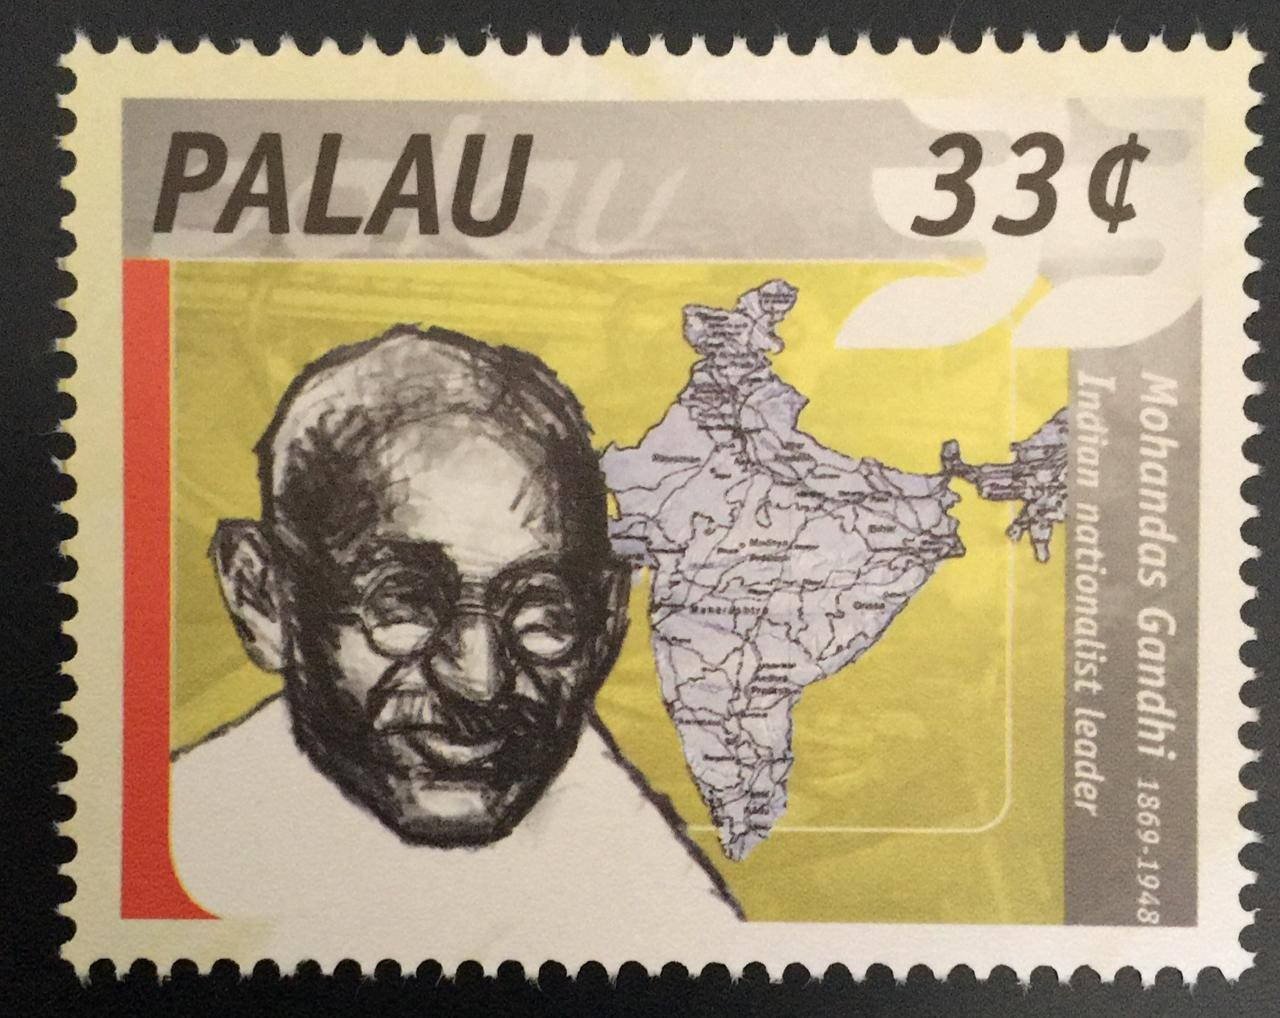 Palau 2000 Mahatma Gandhi 1v Stamp MNH